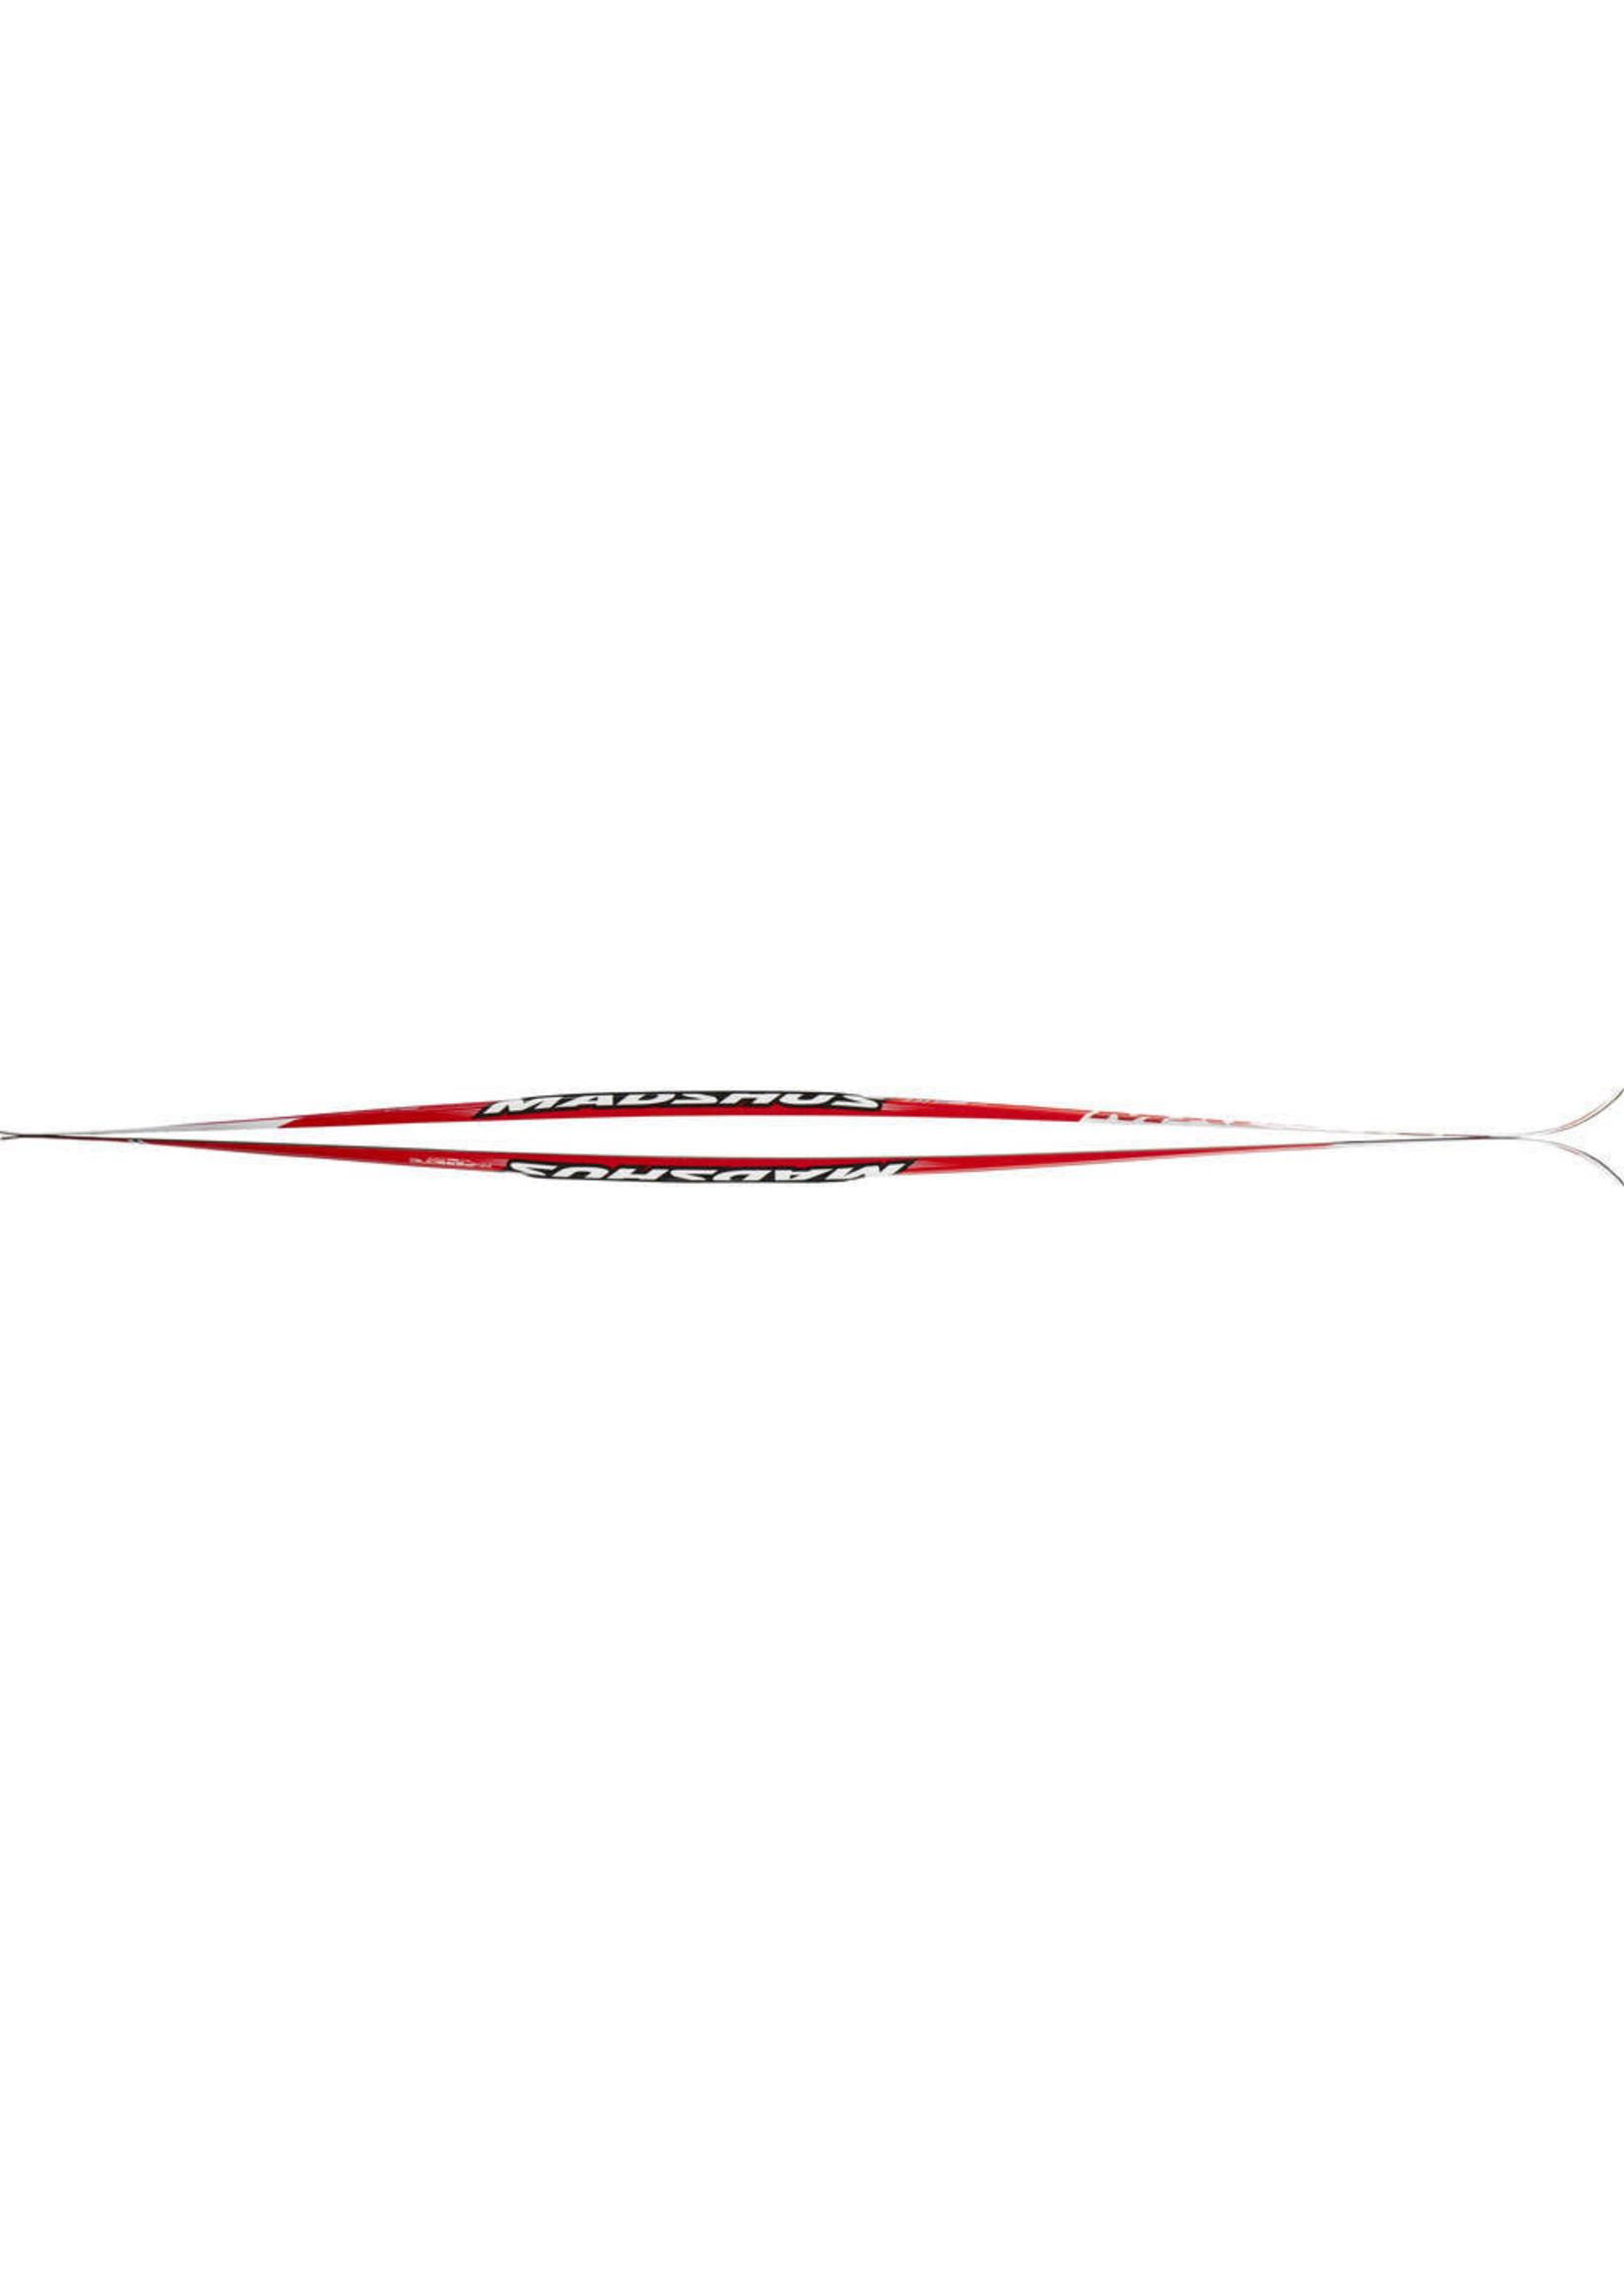 Madshus Skis de fond classiques Hypersonic classic carbon